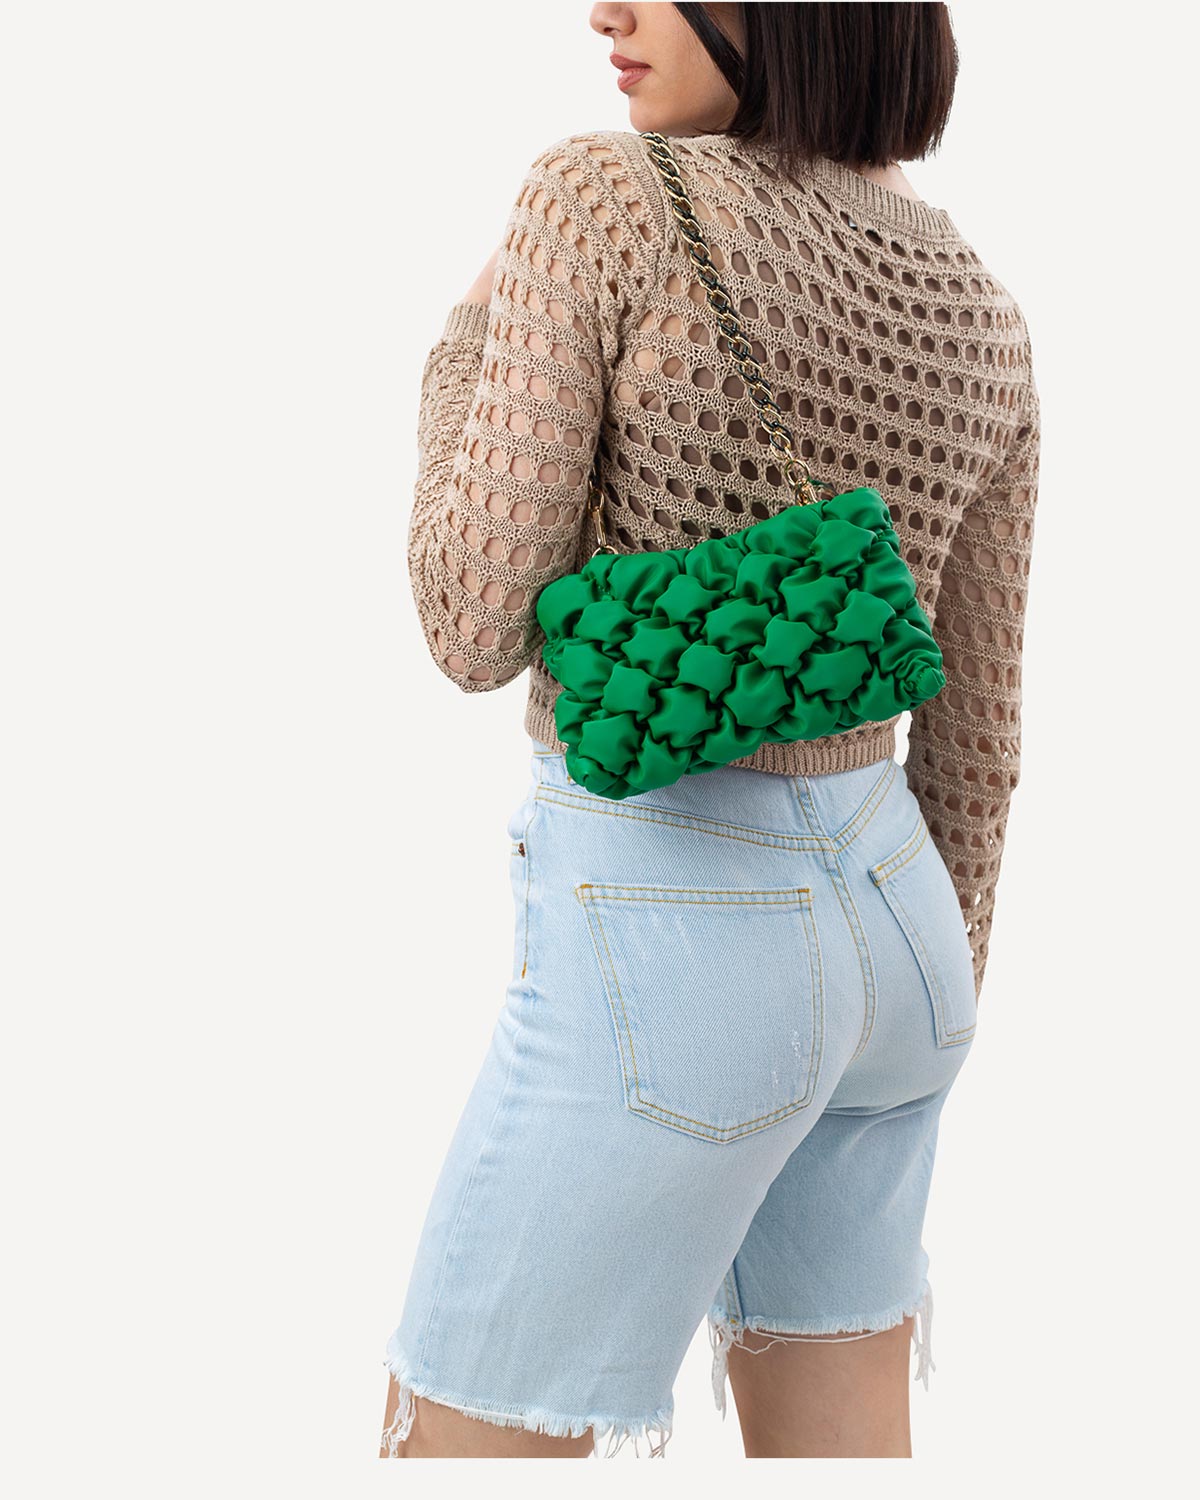 Γυναίκα - Shoulder Bags - Frnc Πράσινο